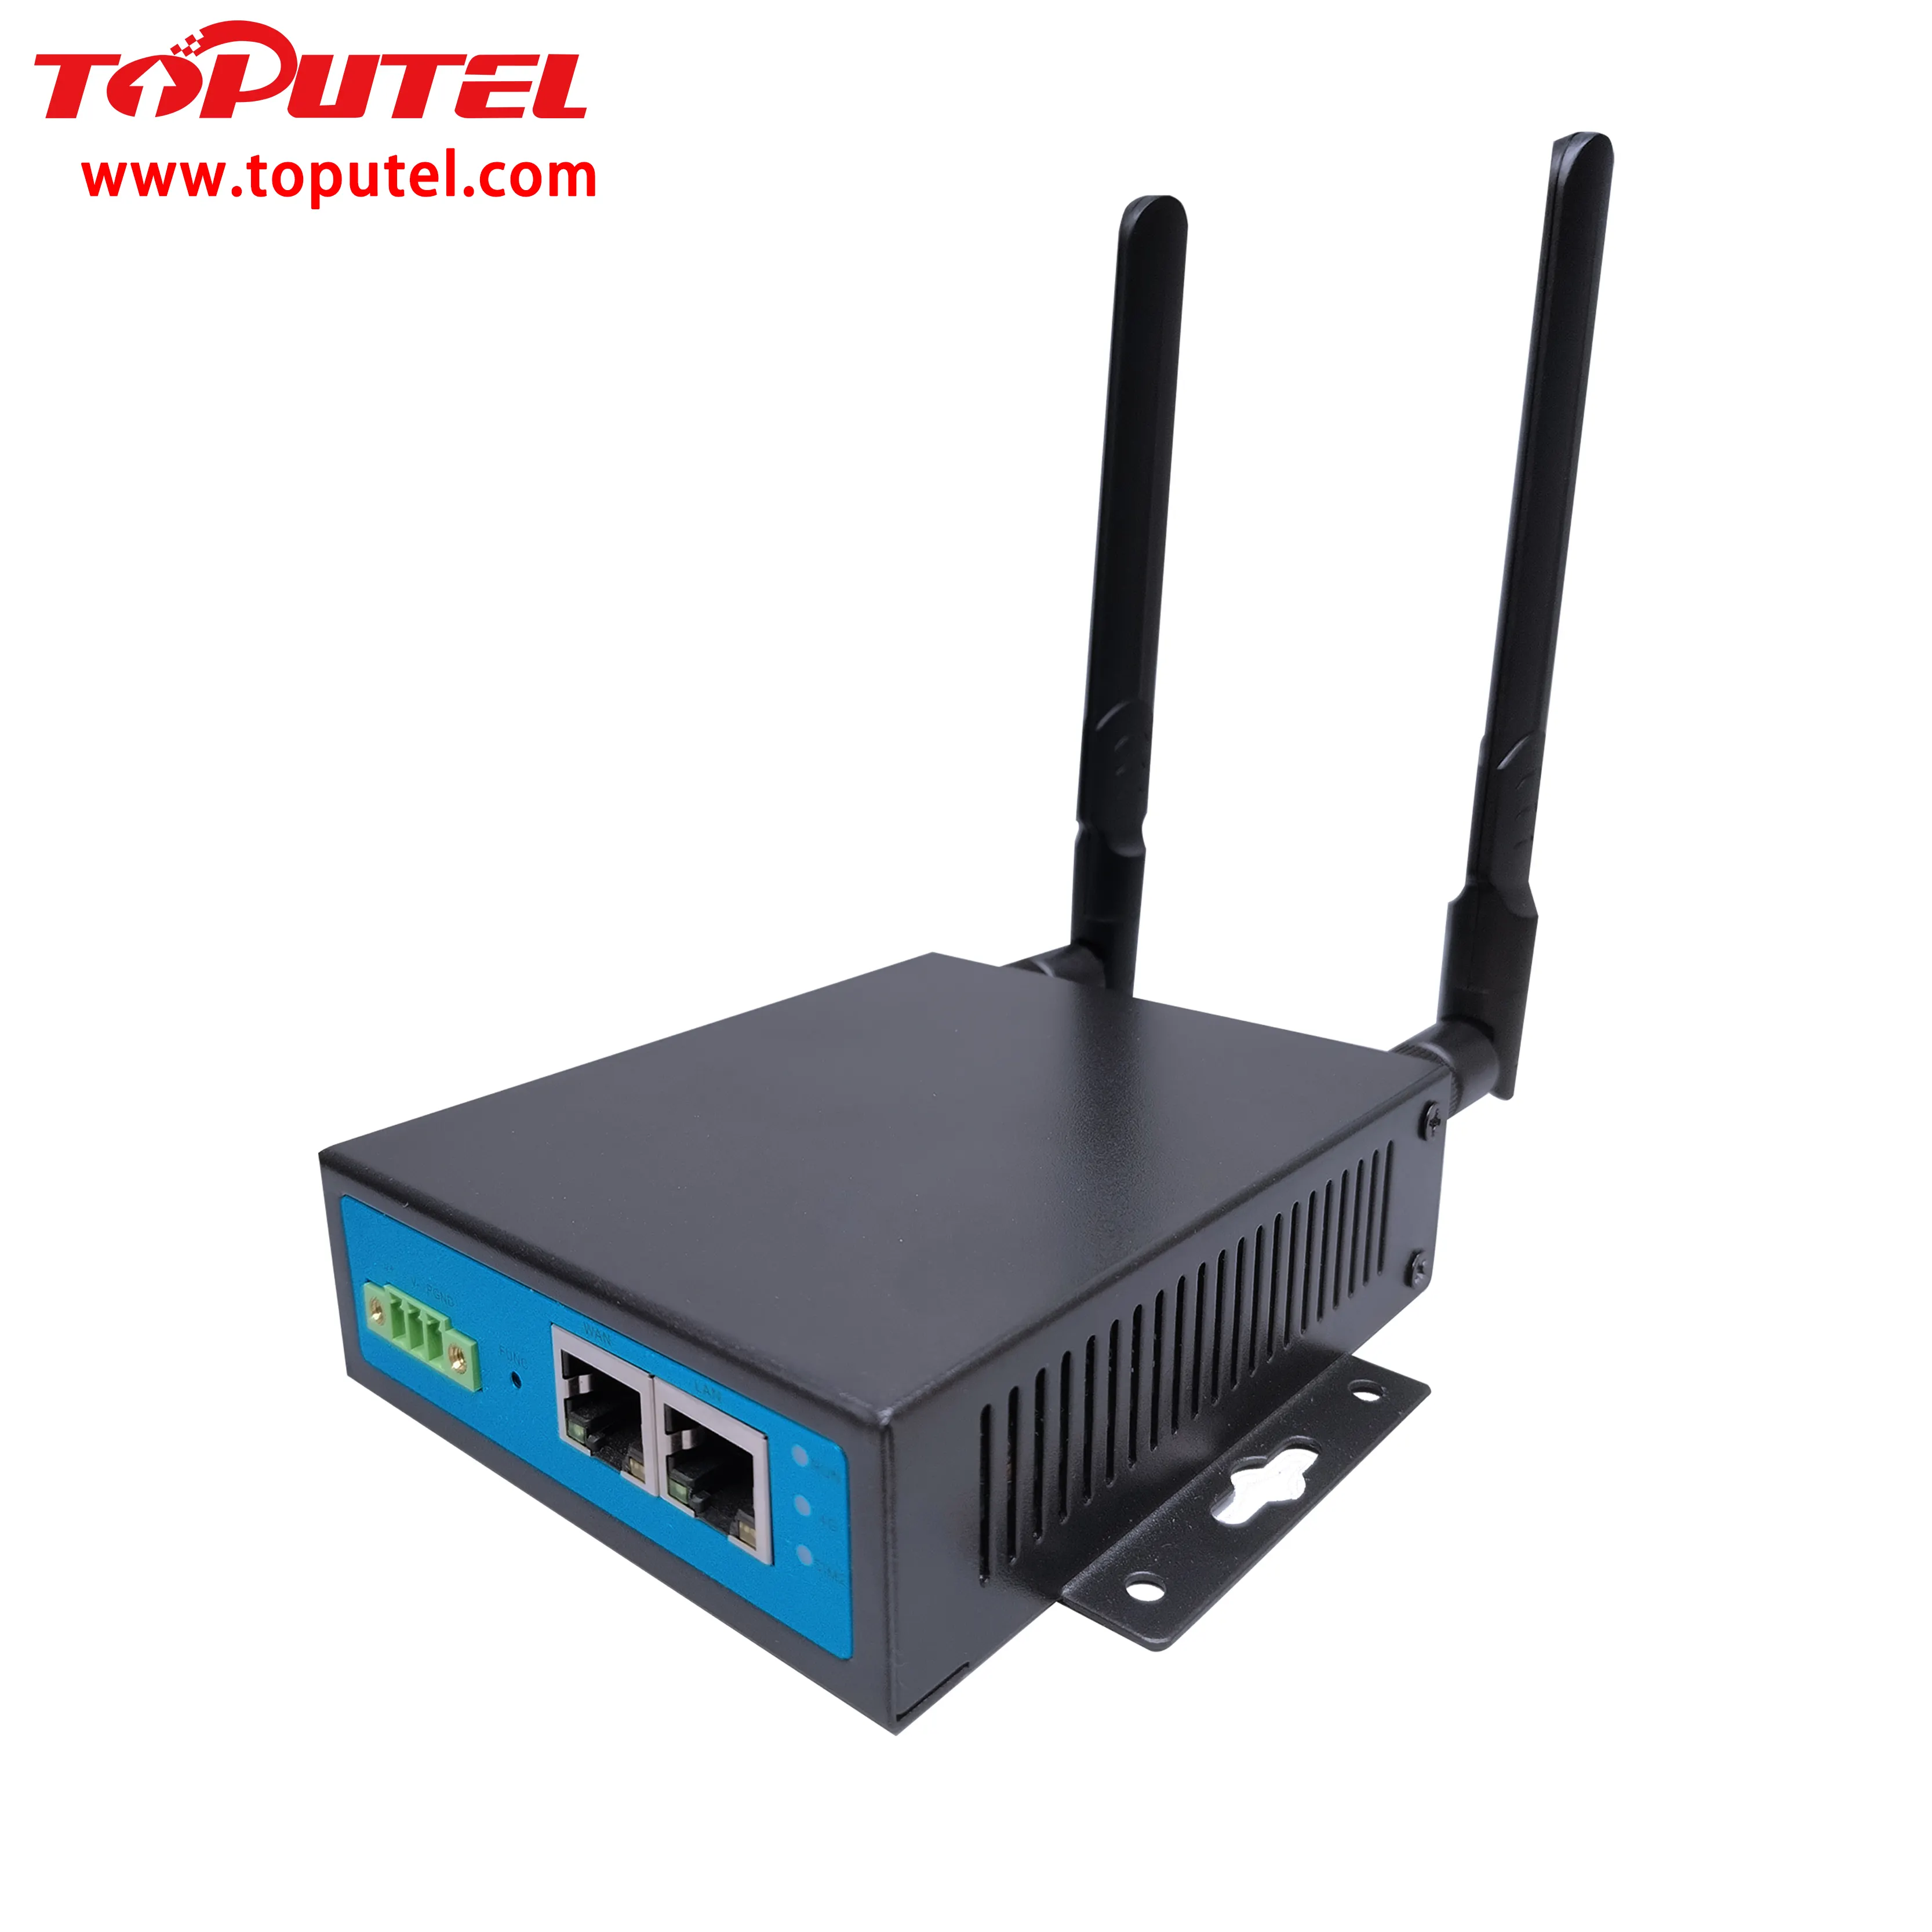 Routeur industriel 4G pour la personnalisation IoT VPN + Logiciel gratuit pour la gestion des appareils + Double SIM + Sortie relais + Modbus RS485 vers MQTT